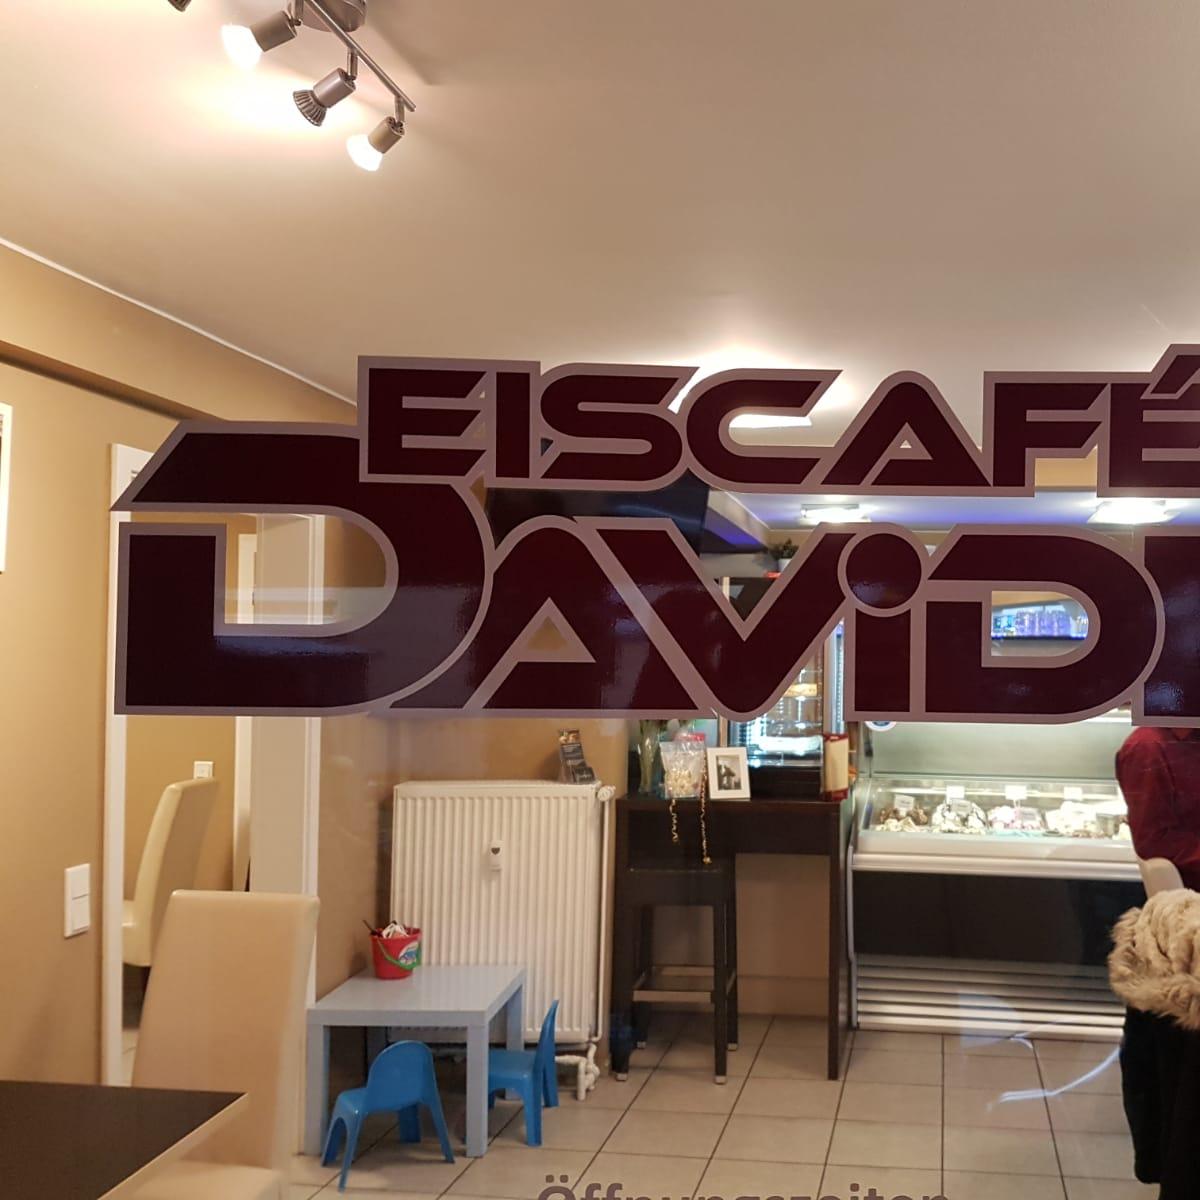 Restaurant "Eiscafé Davide" in Lautertal (Odenwald)